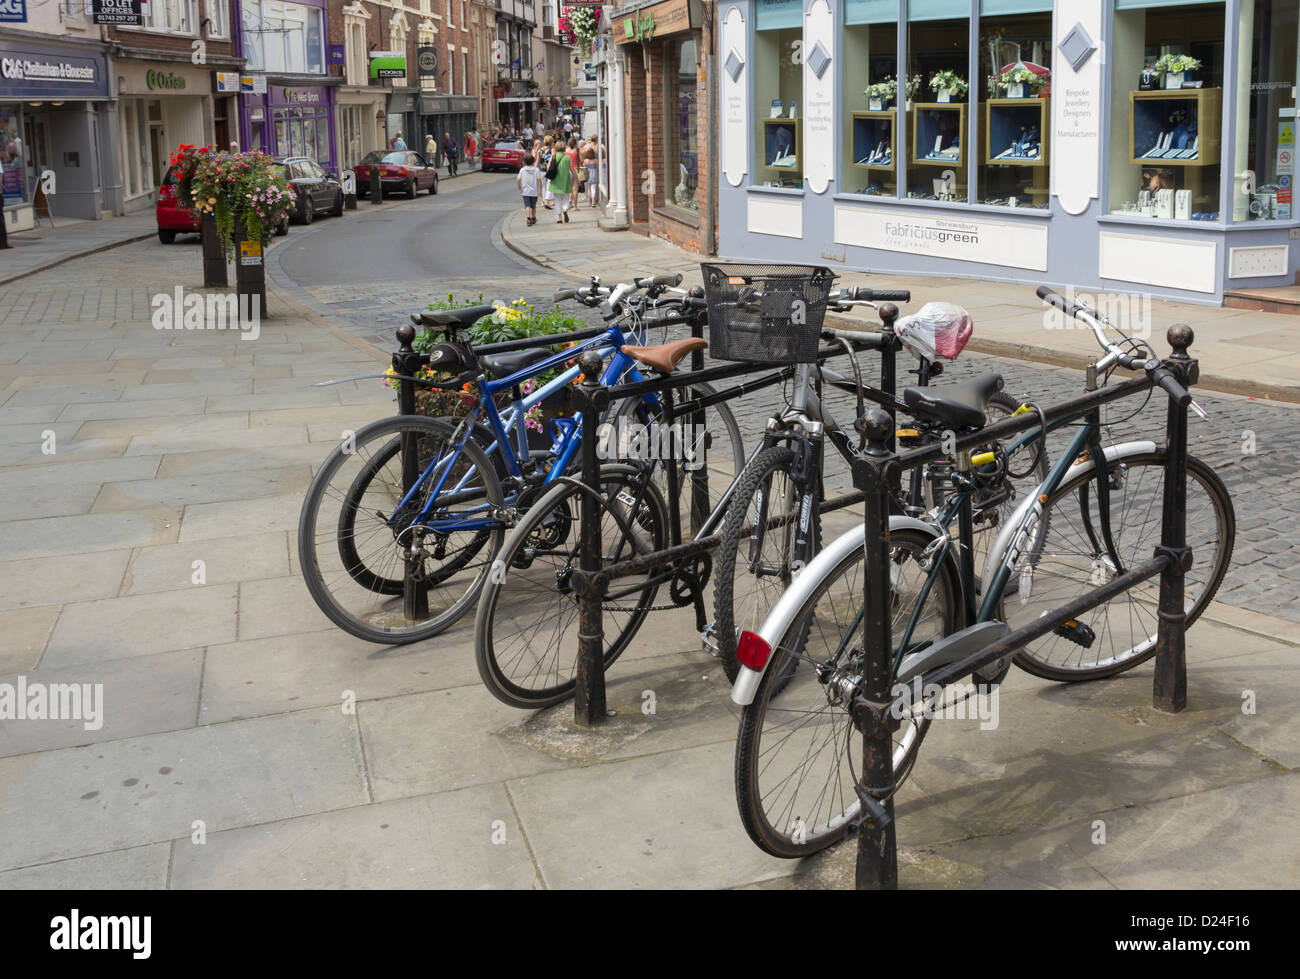 Supporto per bicicletta di fronte al verde Fabricus bei gioielli shop on High Street Shrewsbury. Foto Stock